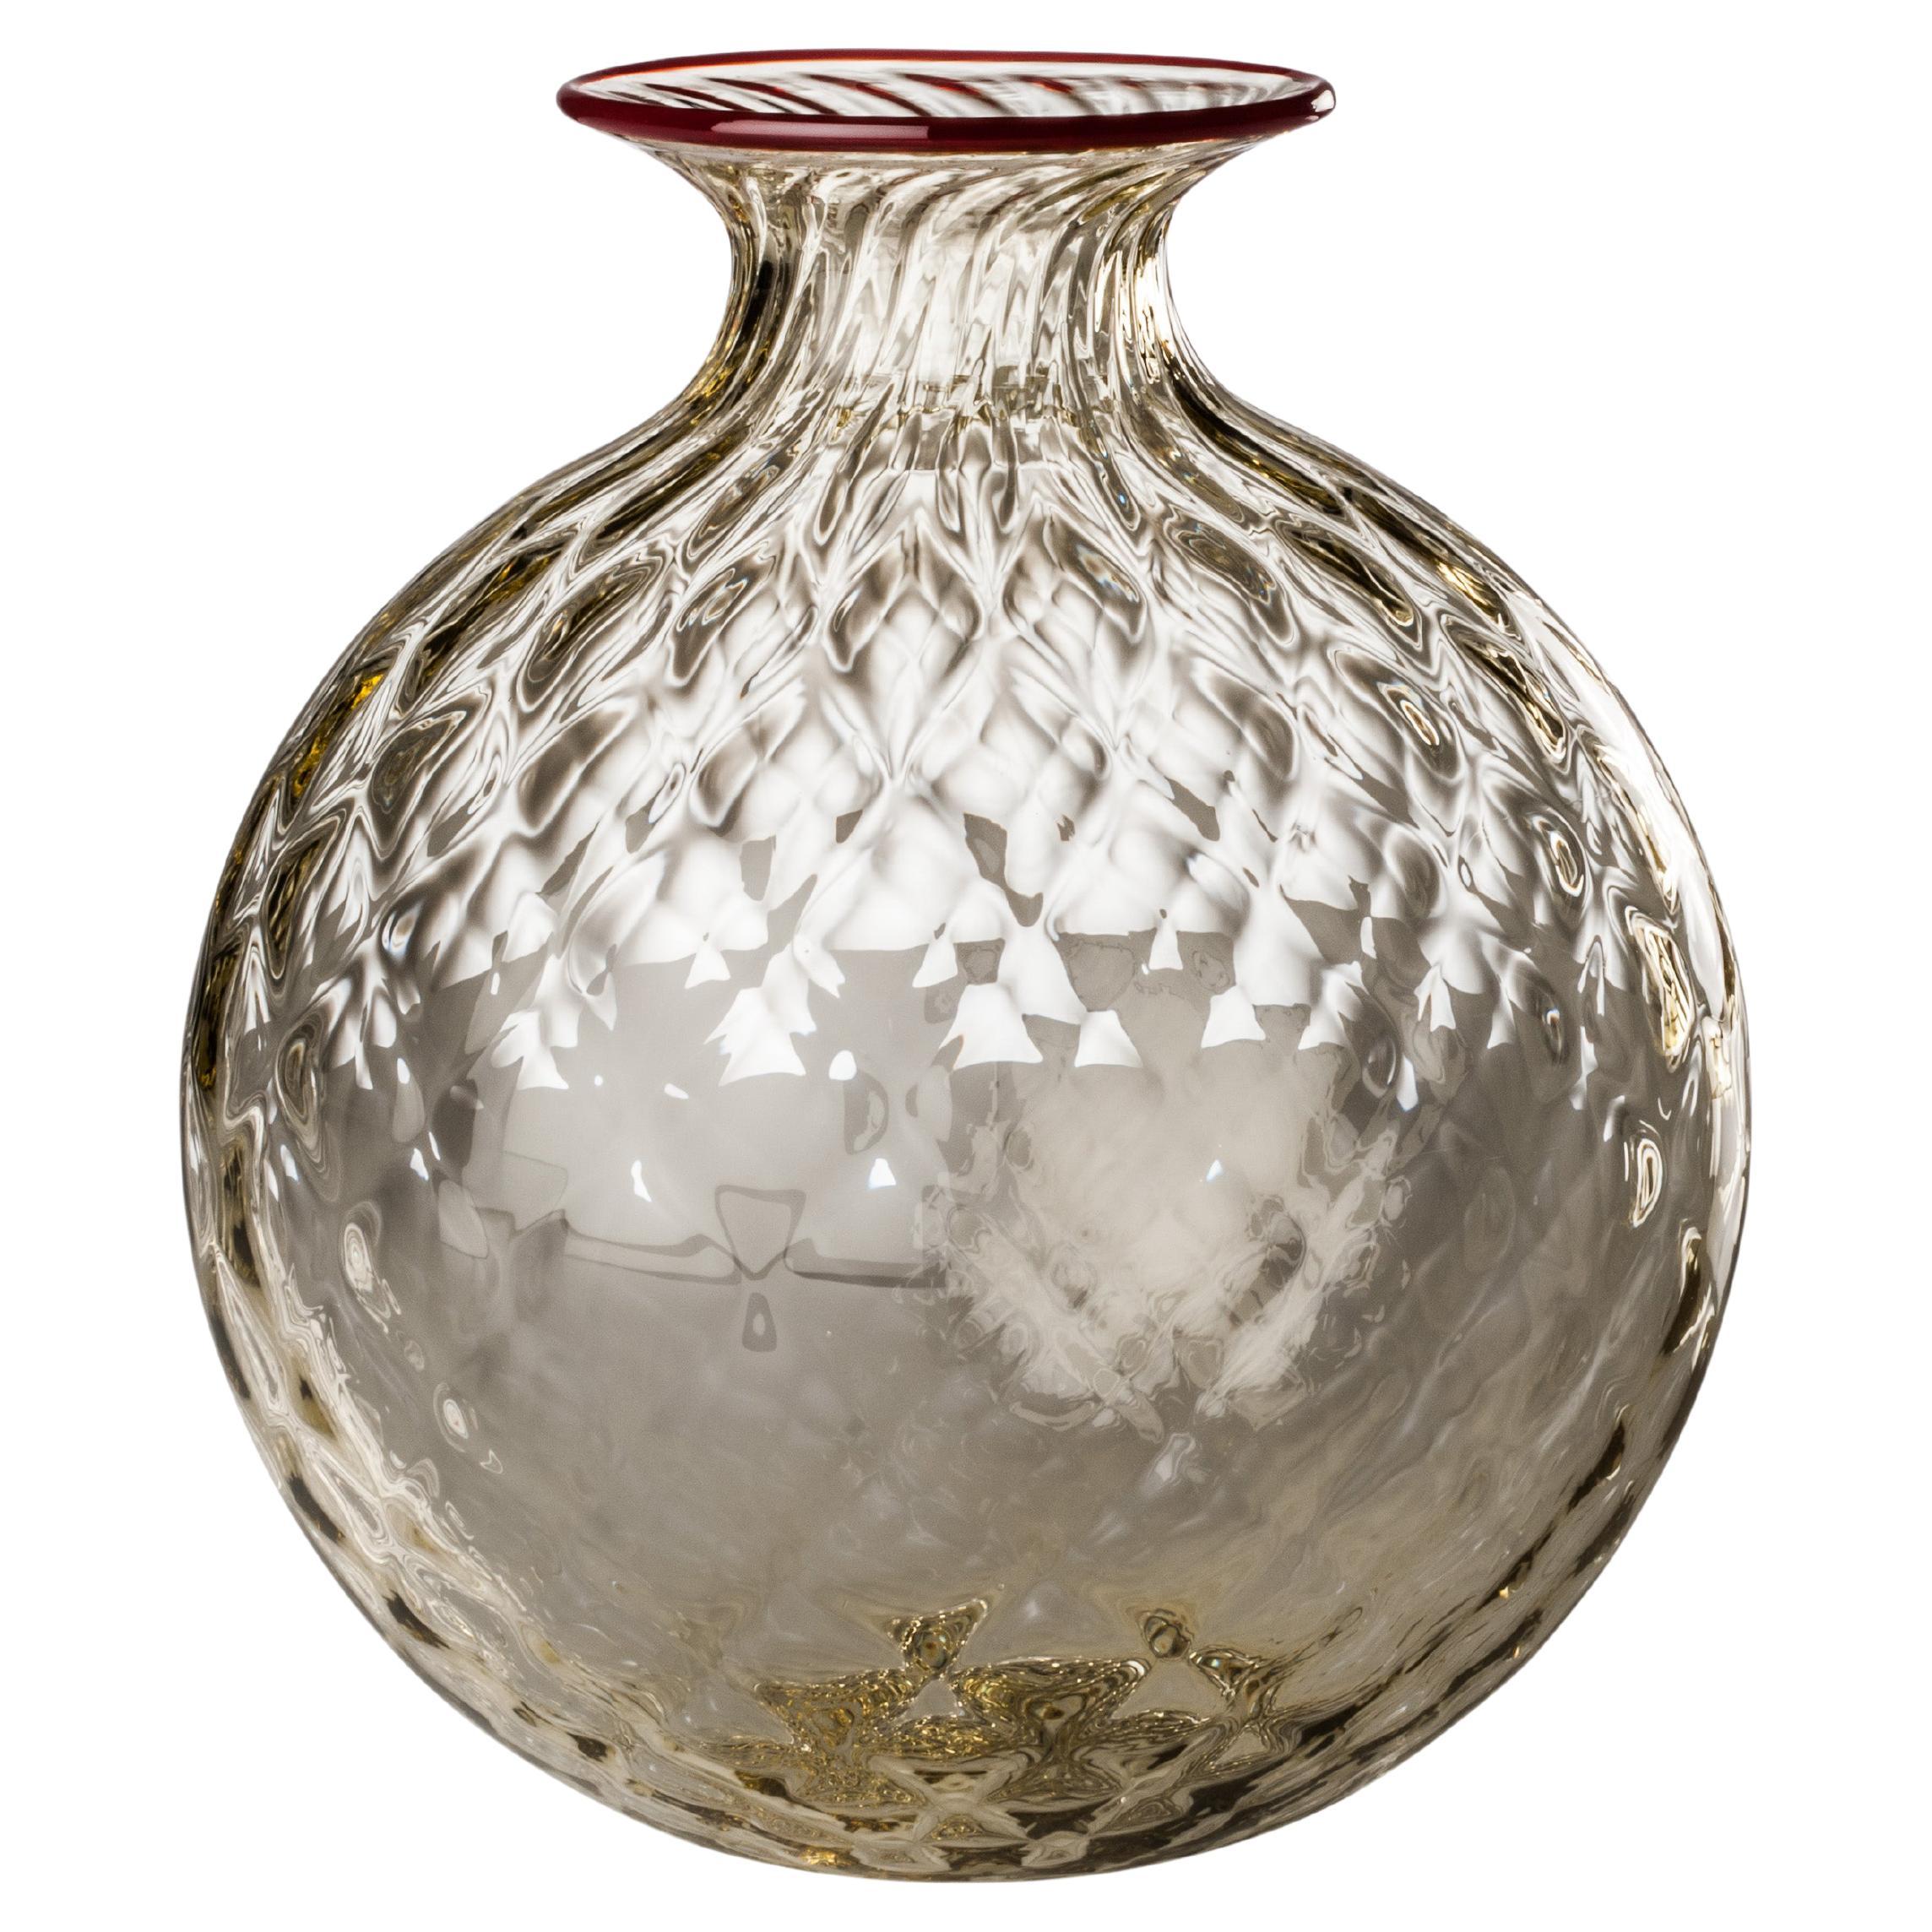 Venini Monofiore Balloton Large Vase in Apple Green Red Thread Murano Glass